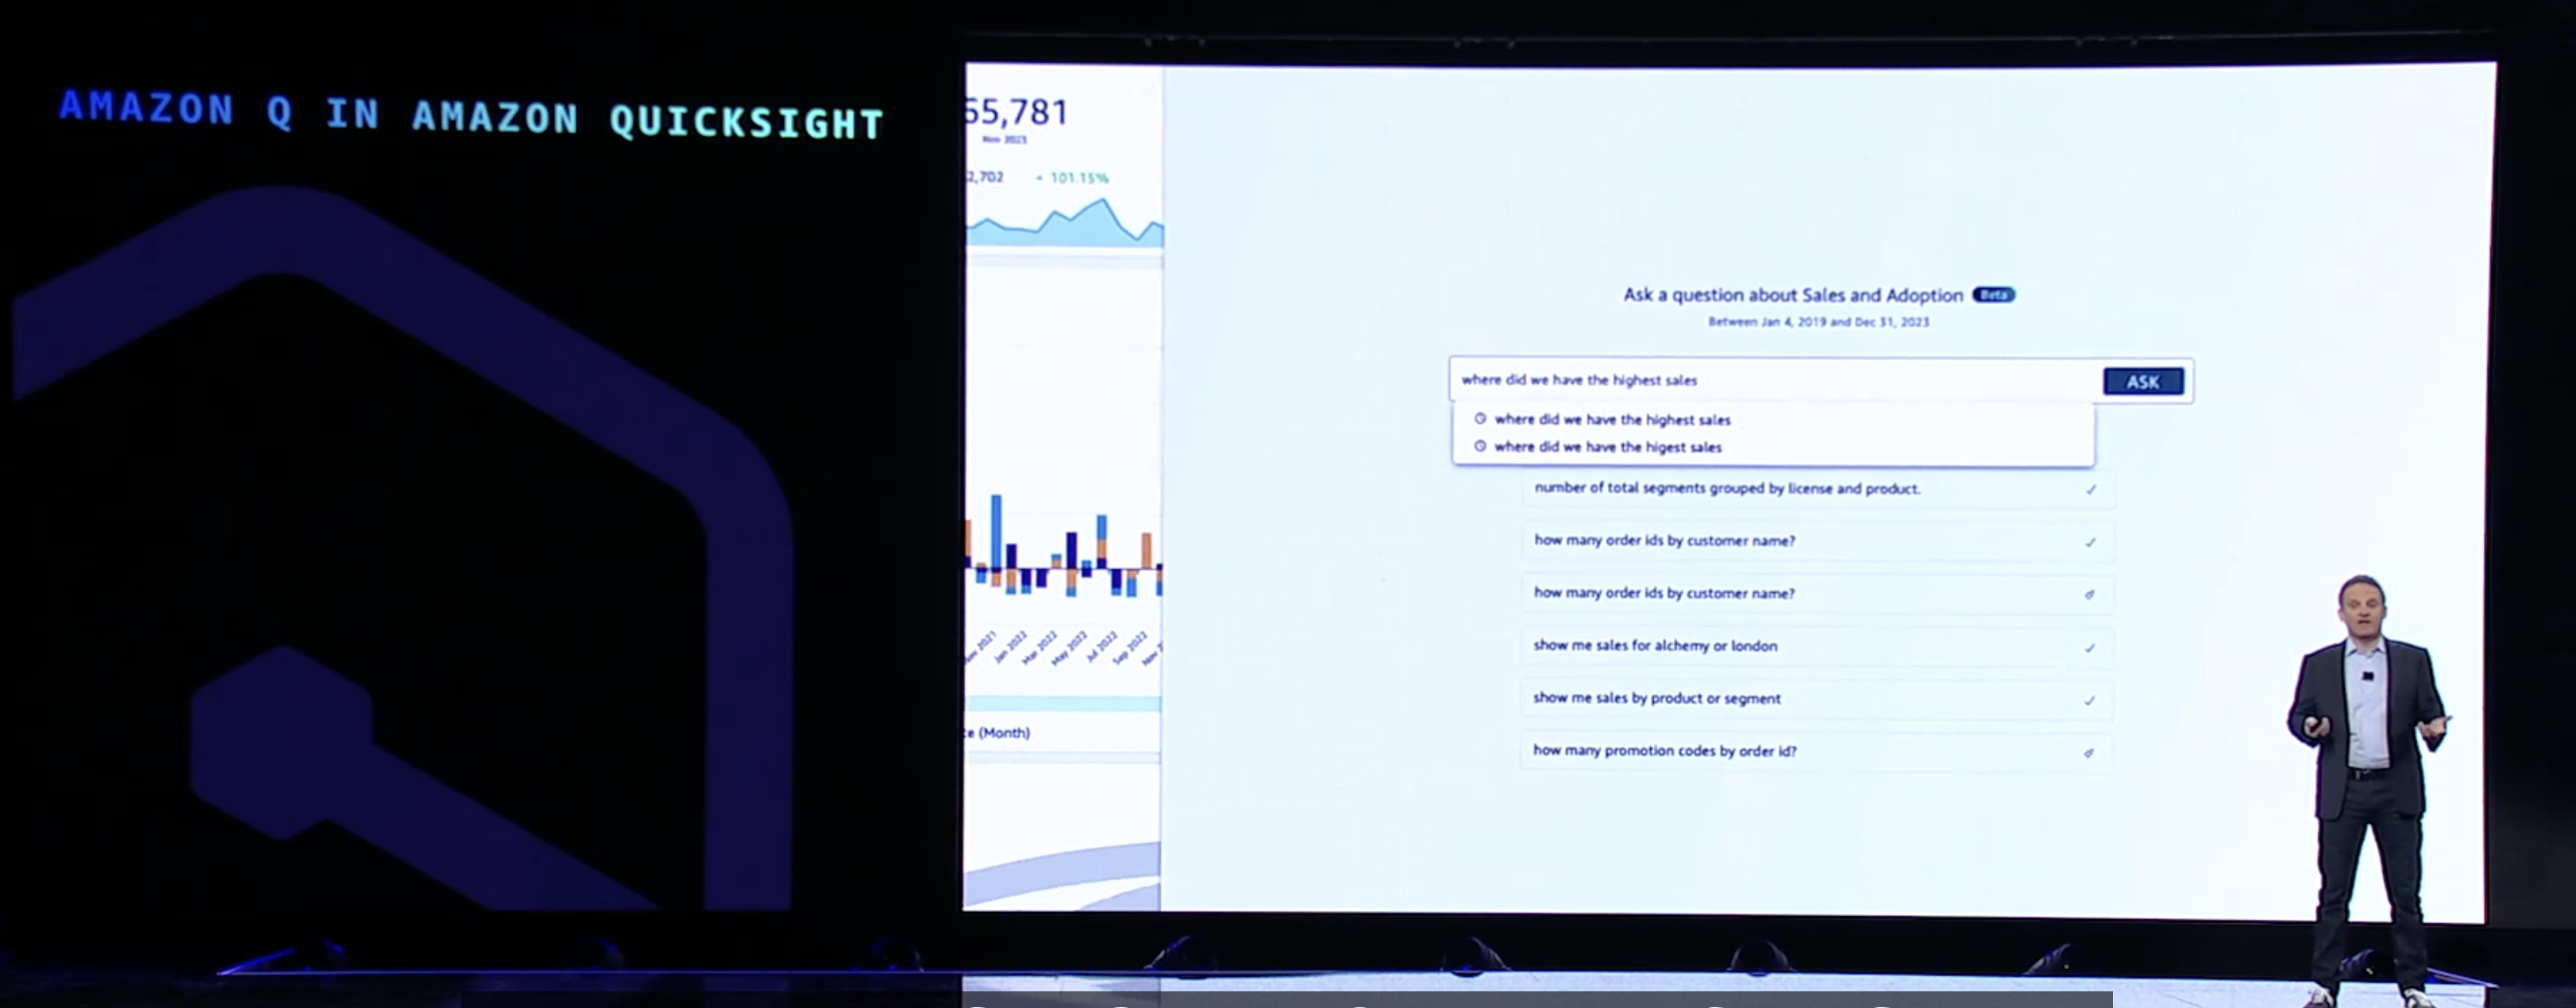 Yapay zeka destekli bir sohbet robotu olan Amazon Q, AWS Reinvent 2023'te sahnede tanıtıldı